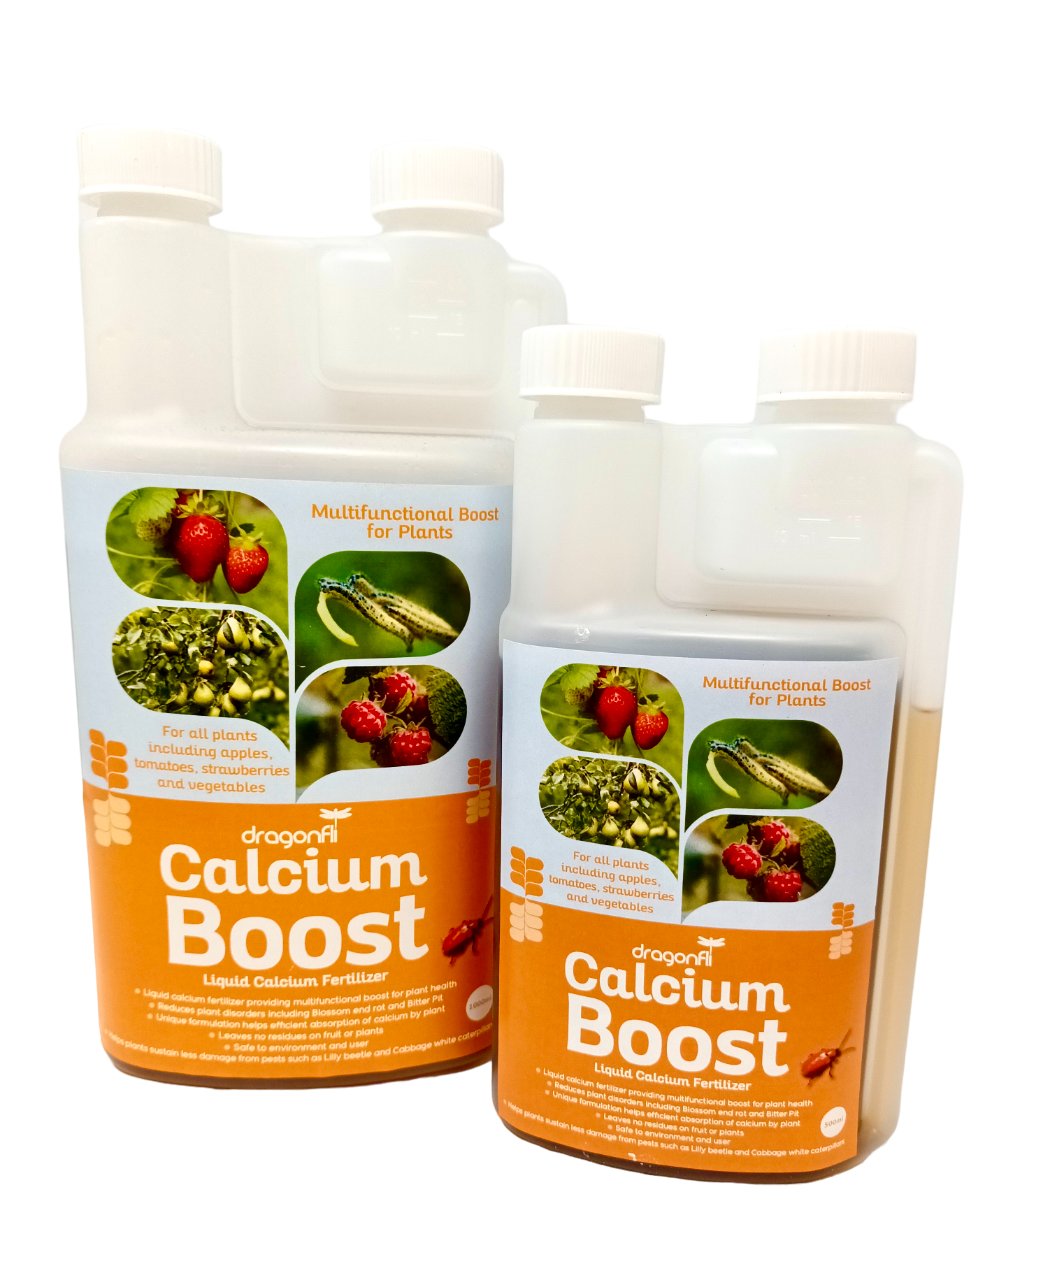 Calcium Boost - Liquid Calcium Fertilizer